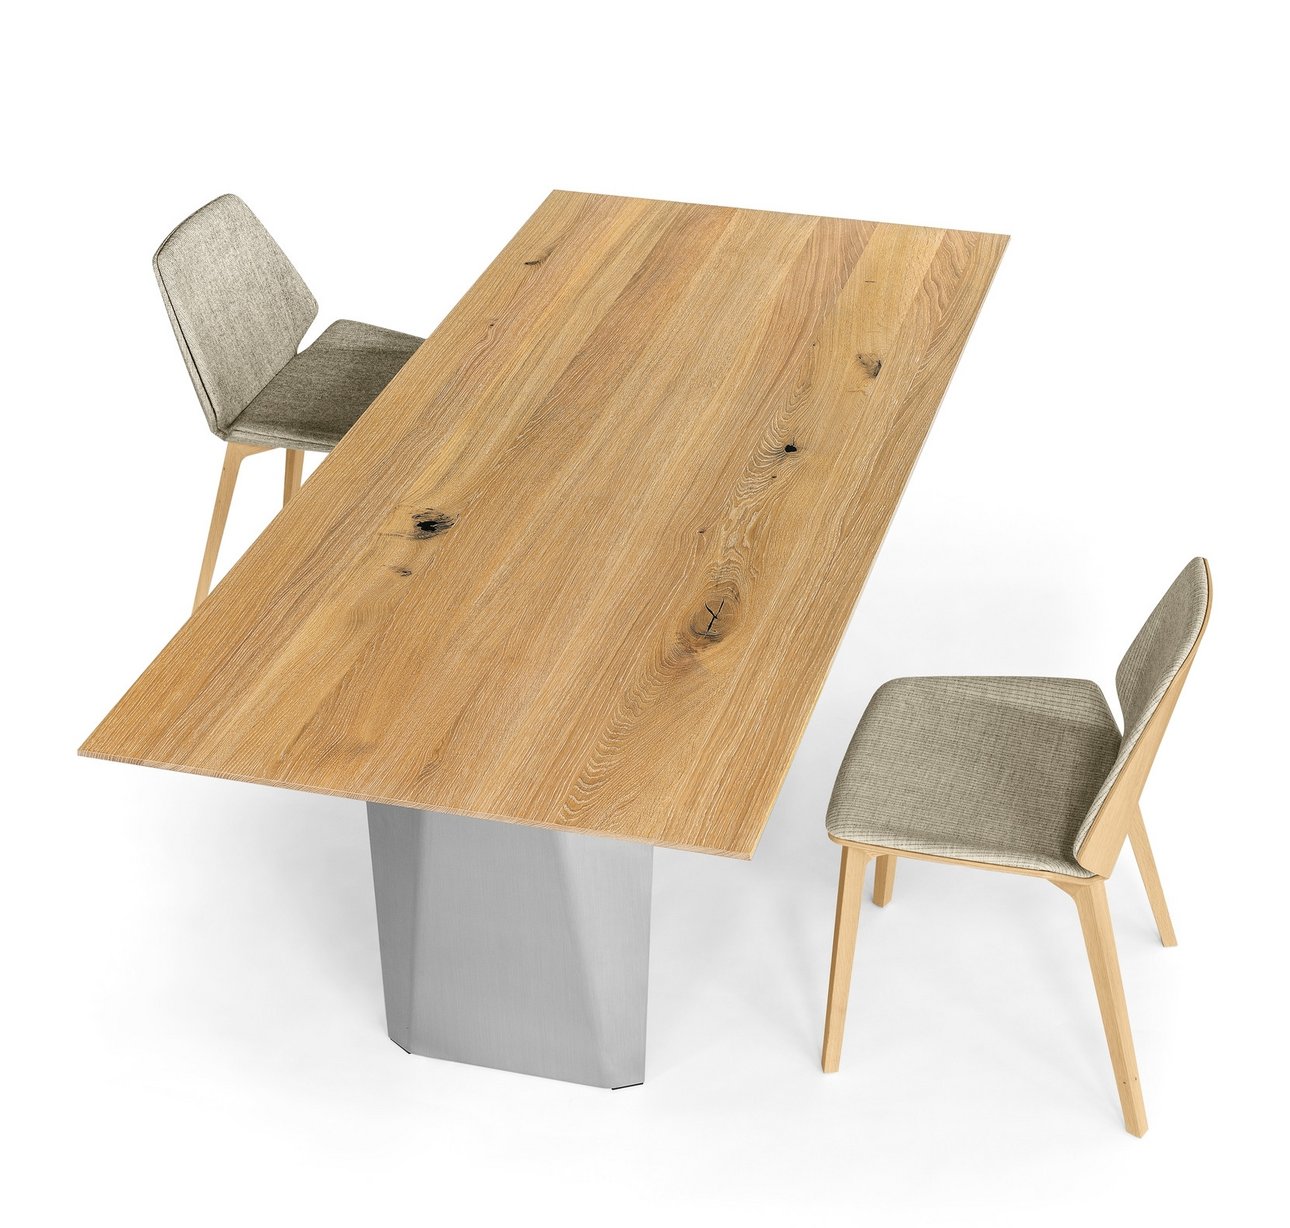 Tisch BELA Girsberger wunderschöner Vollholztisch aus Asteiche geölt, Wangen aus Stahl lackiert Maße: L 220 cm / T 100 cm / H 74 cm mit ausziehbarer Klappeinlage 100 cm